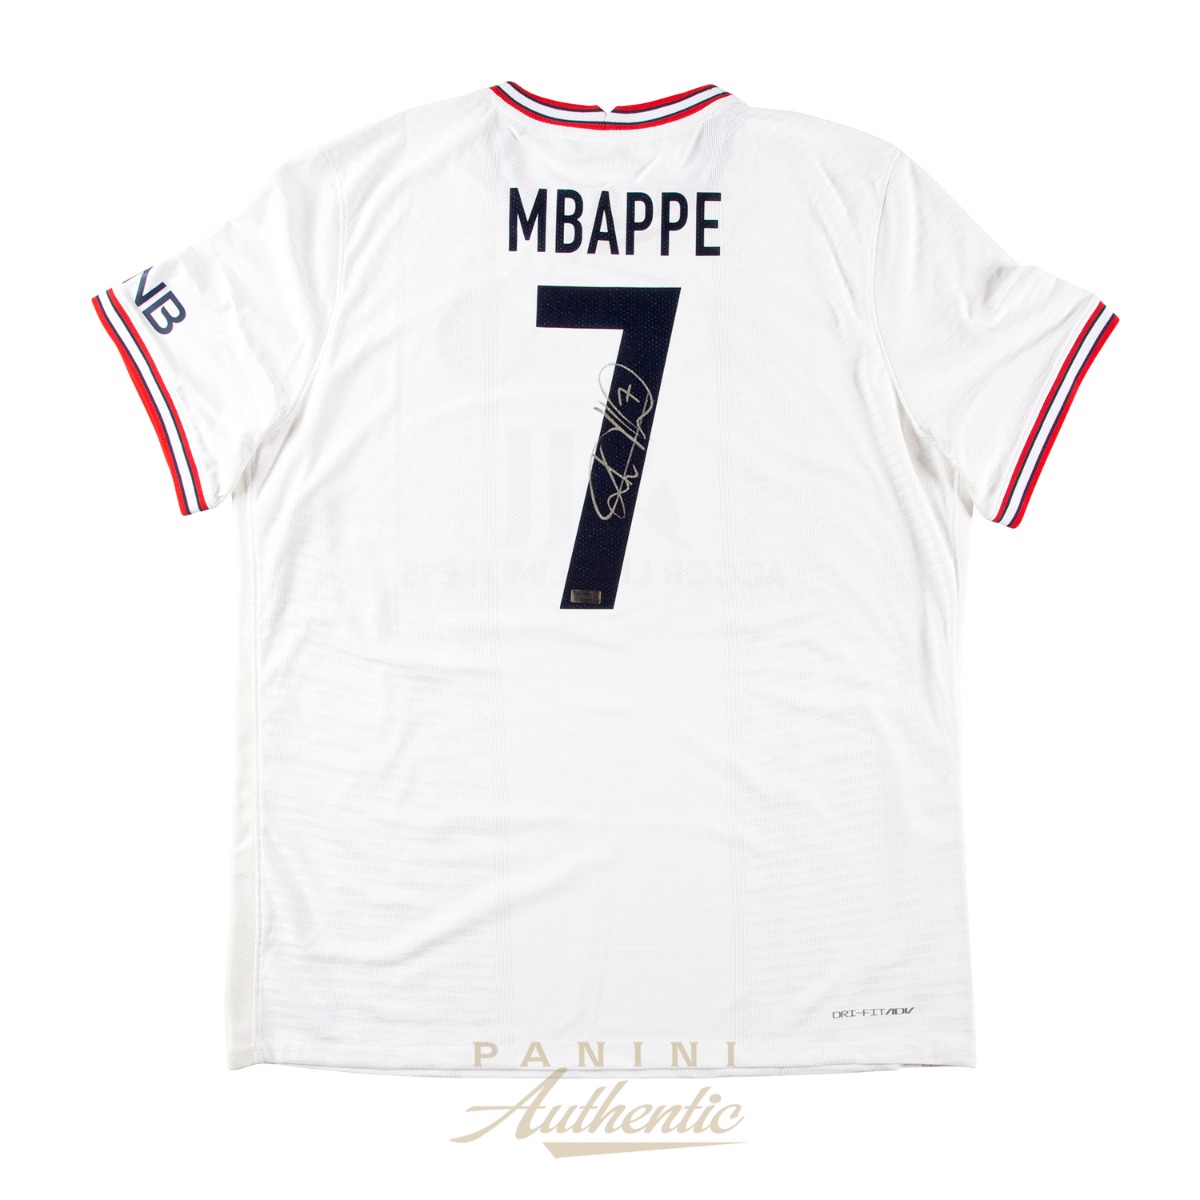 Kylian Mbappe Autographed 2021-22 Paris Saint-Germain Authentic